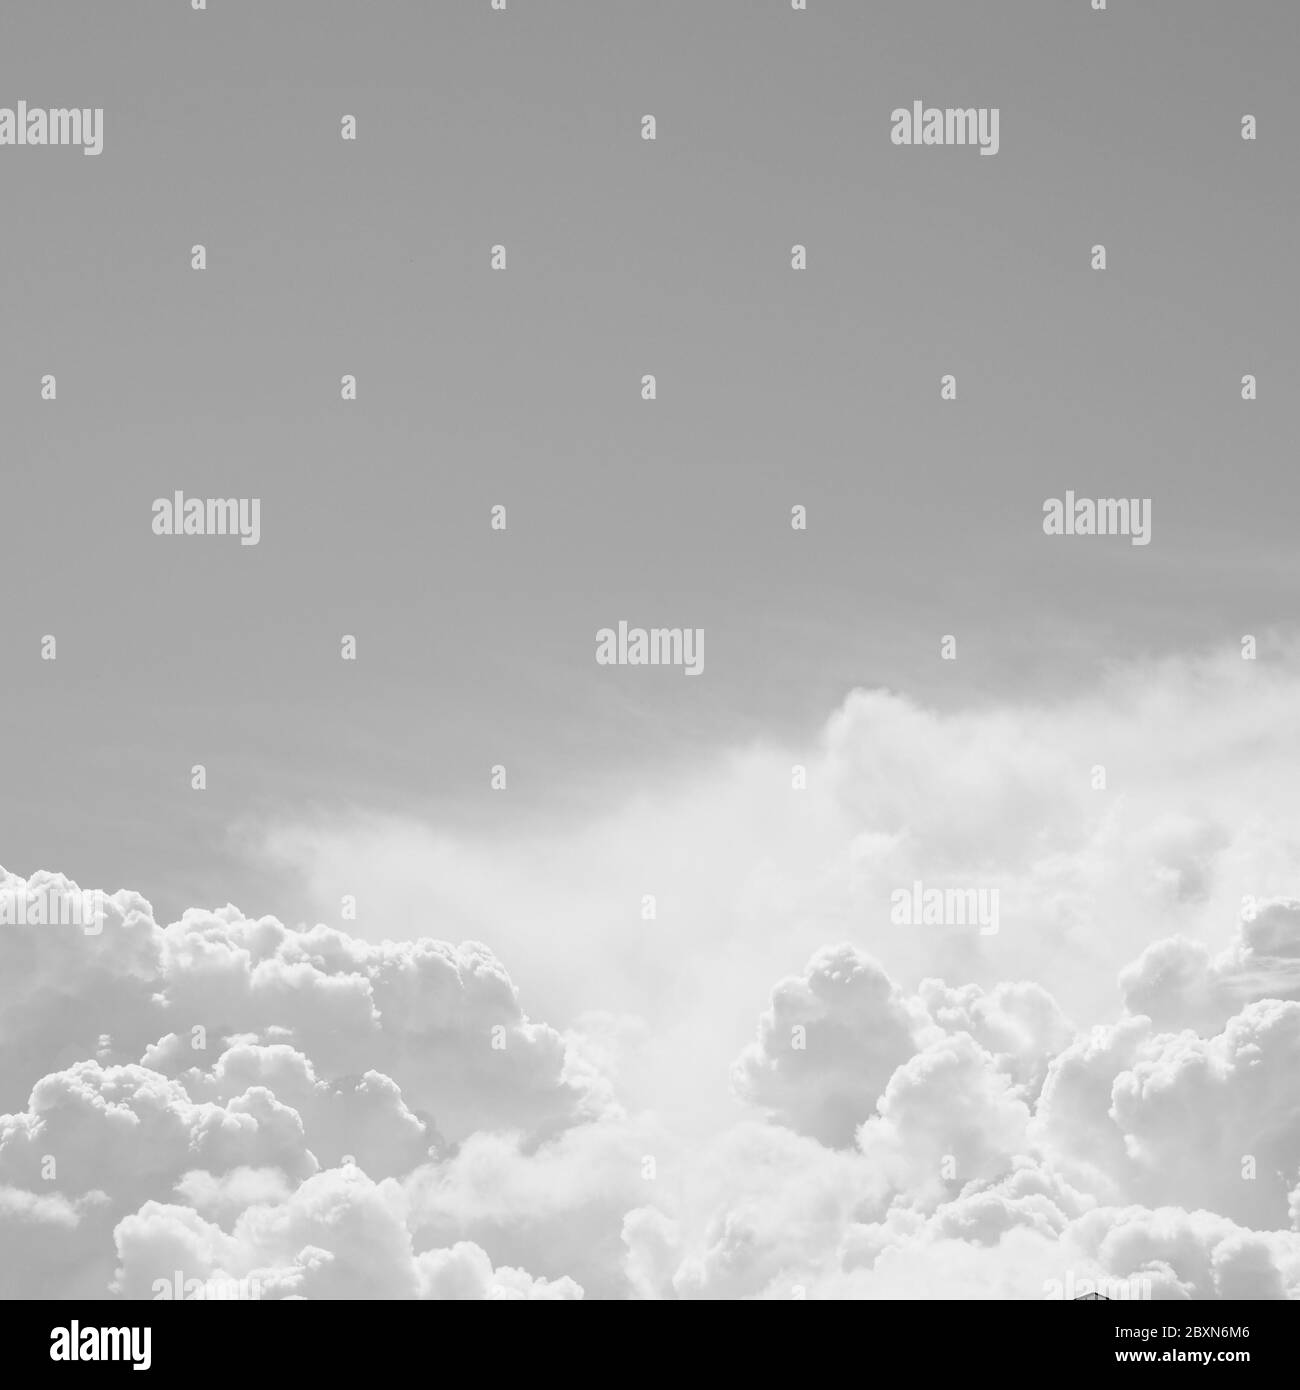 Immagine in bianco e nero di cielo e nuvole, posto per un'iscrizione. Foto Stock